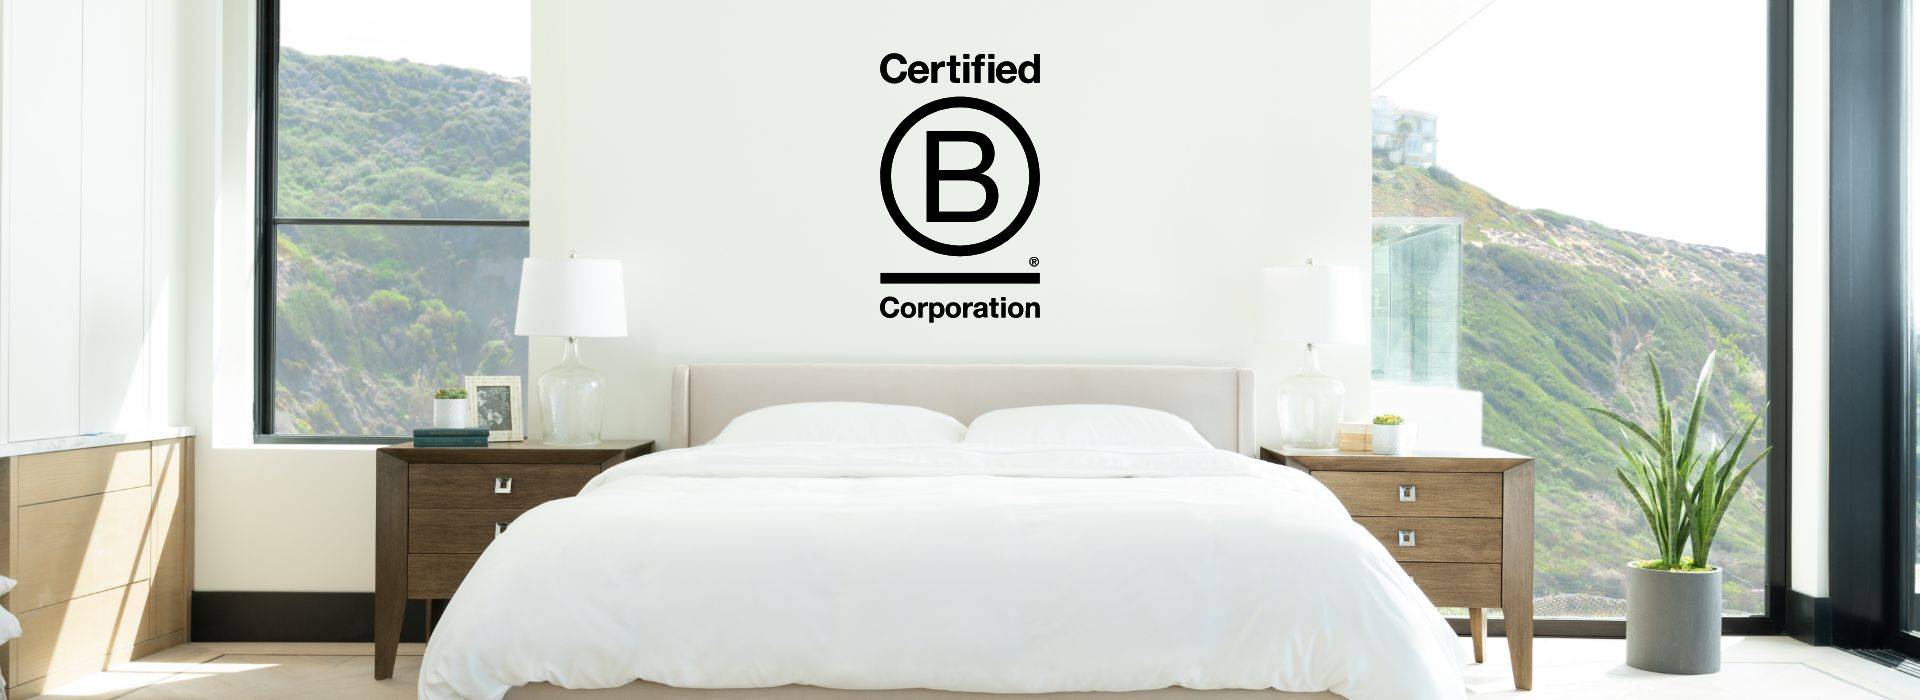 Certificeret b-selskab